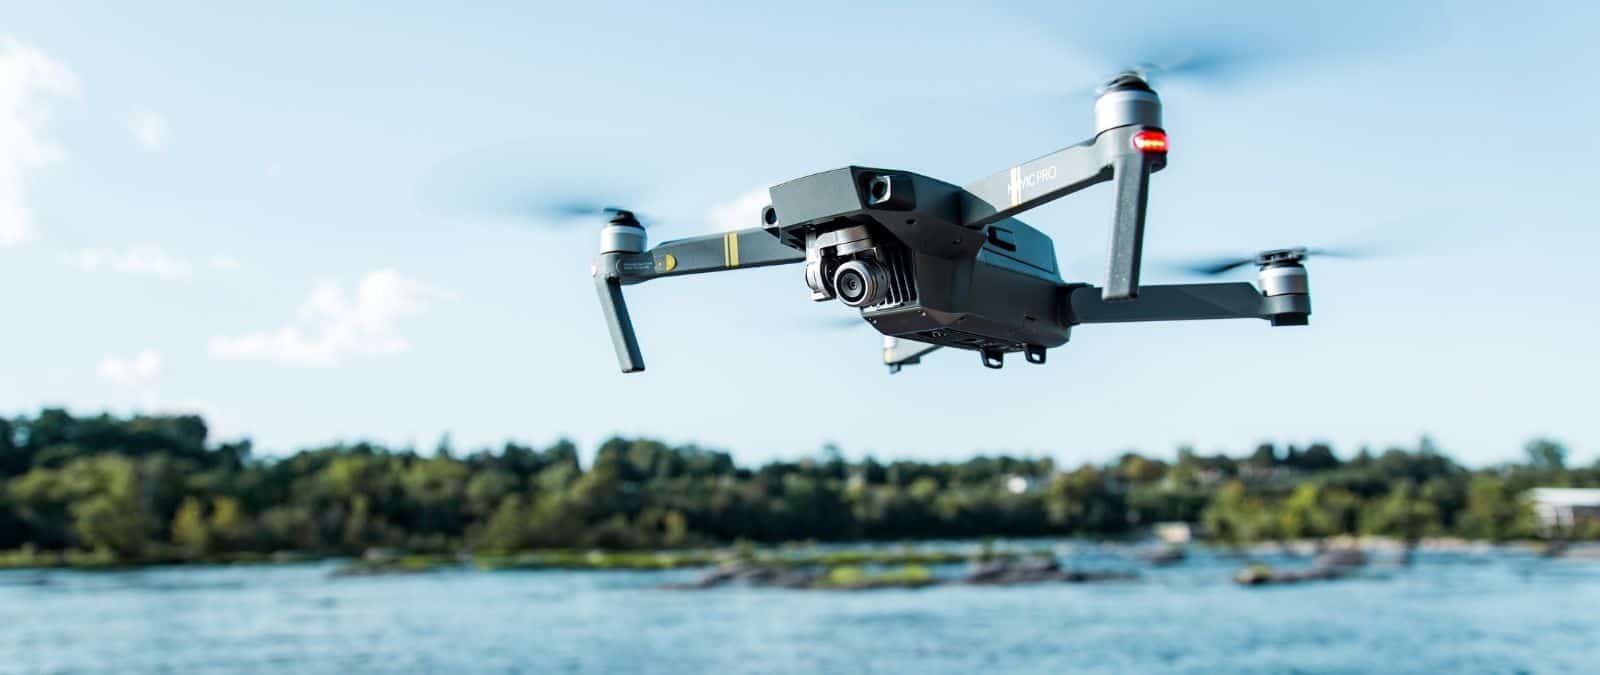 Dónde y cómo volar un dron según la normativa española